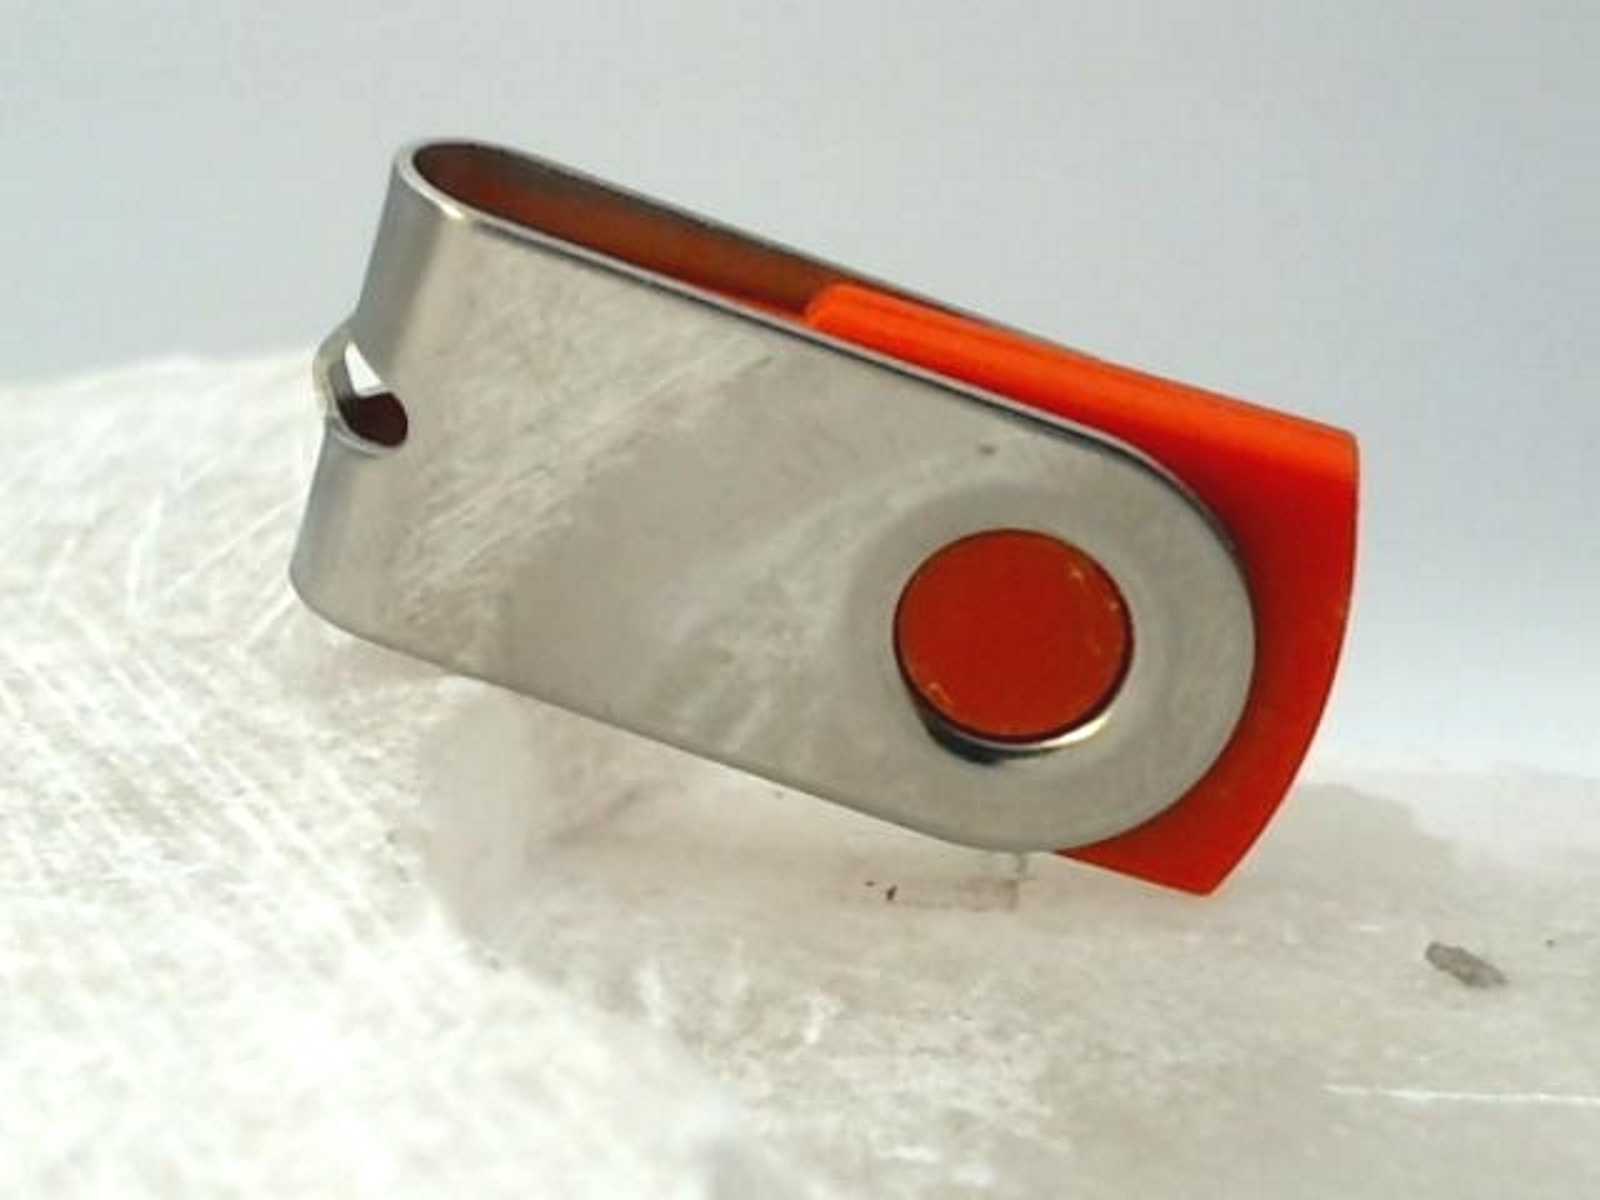 ® USB 128 MINI-SWIVEL (Rot-Chrome, GERMANY GB) USB-Stick